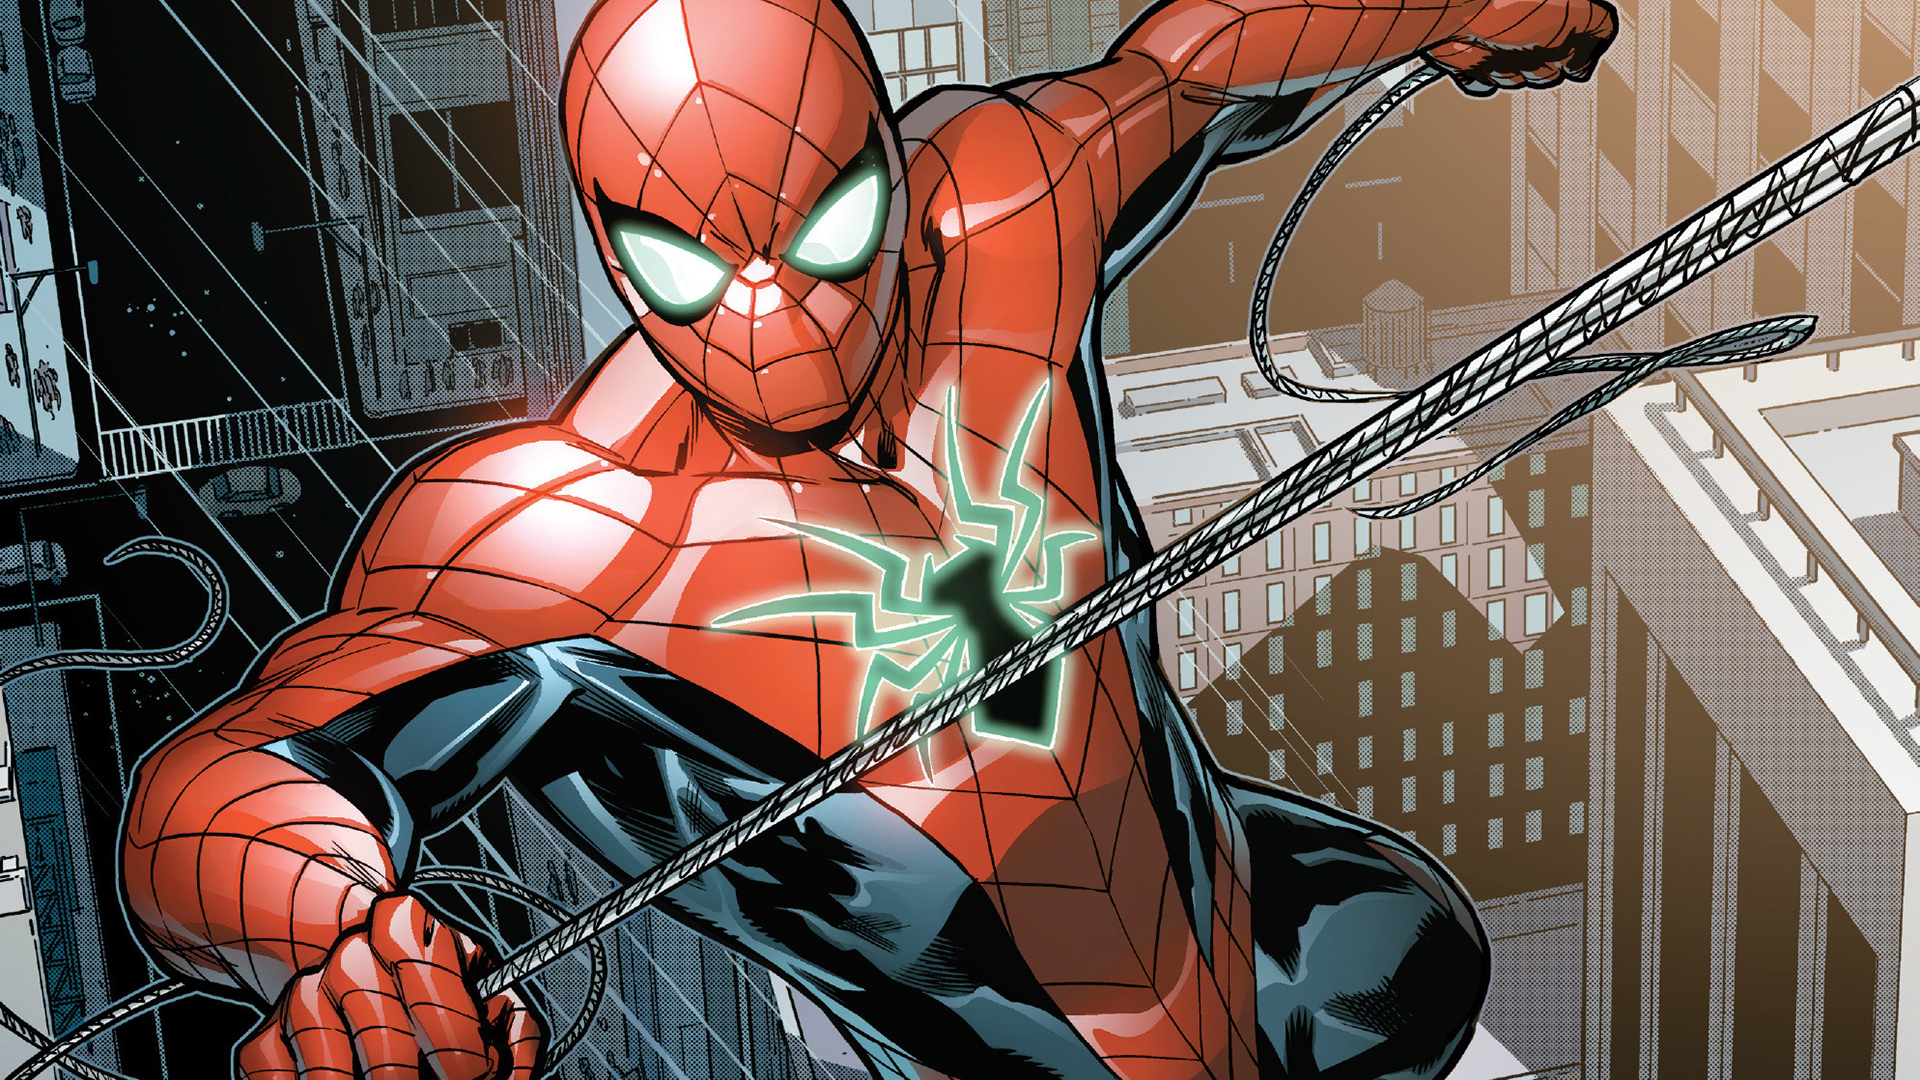 Спайдер комикс. Человек паук Marvel Comics. Marvel Spider man Питер Паркер. Комиксы Марвел Spider man. Человек-паук (Marvel Mangaverse).